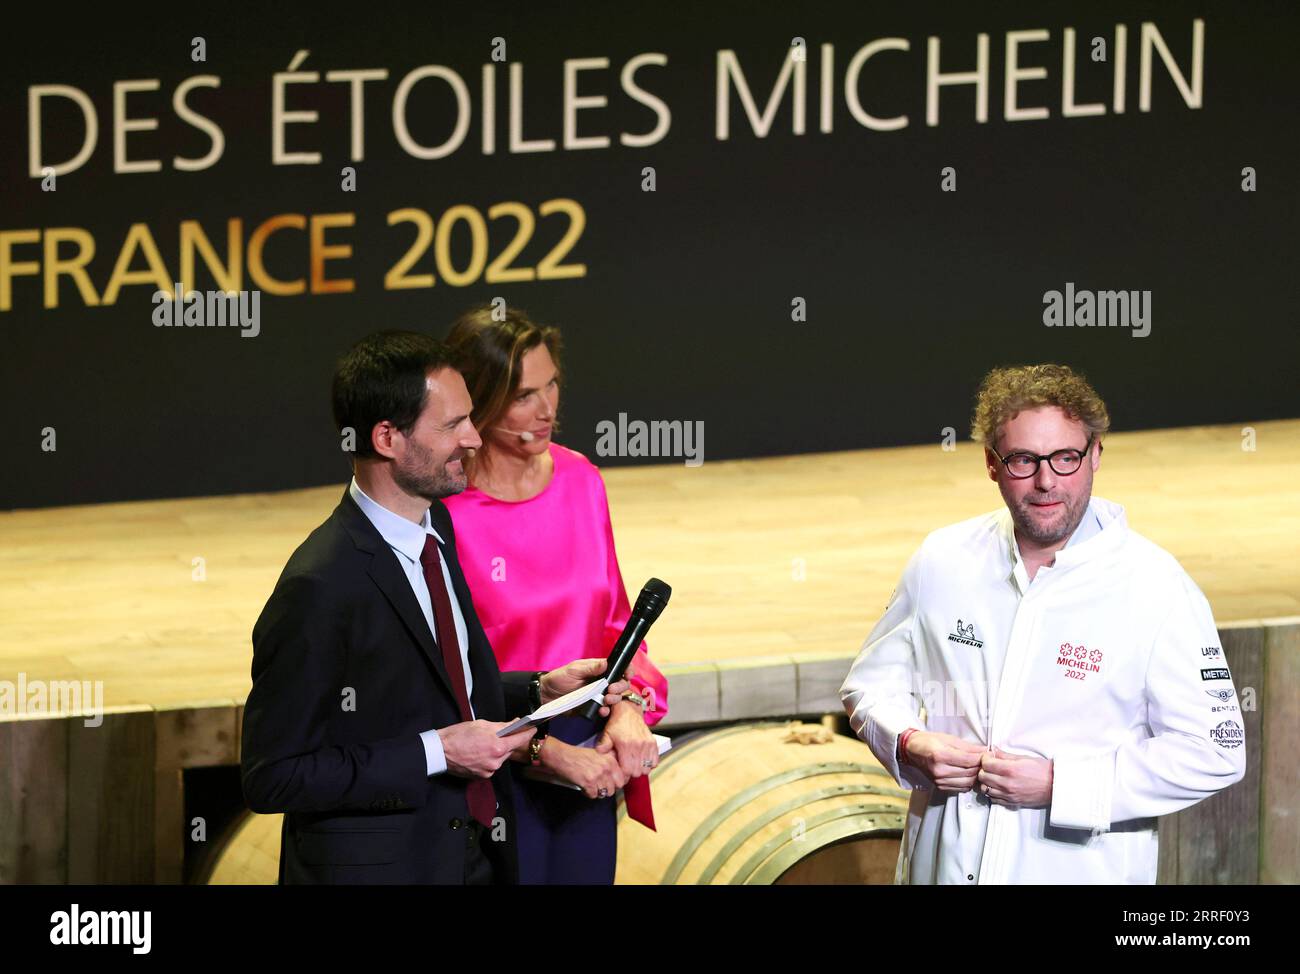 220323 -- COGNAC, 23. März 2022 -- der französische Küchenchef Arnaud Donckele R zieht seine neue Küchenjacke an, nachdem er bei der Verleihung der Michelin Guide-Preisverleihung 2022 in Cognac, Frankreich, am 22. März 2022 mit einem dritten Michelin-Stern ausgezeichnet wurde. Der Michelin Guide startete seine Ausgabe 2022 am Dienstag in Cognac, das erste Mal seit 122 Jahren, dass die Zeremonie außerhalb von Paris stattfand. Zwei Restaurants wurden mit der höchsten Auszeichnung von drei Sternen ausgezeichnet. FRANKREICH-COGNAC-MICHELIN-PREISVERLEIHUNG GAOXJING PUBLICATIONXNOTXINXCHN Stockfoto